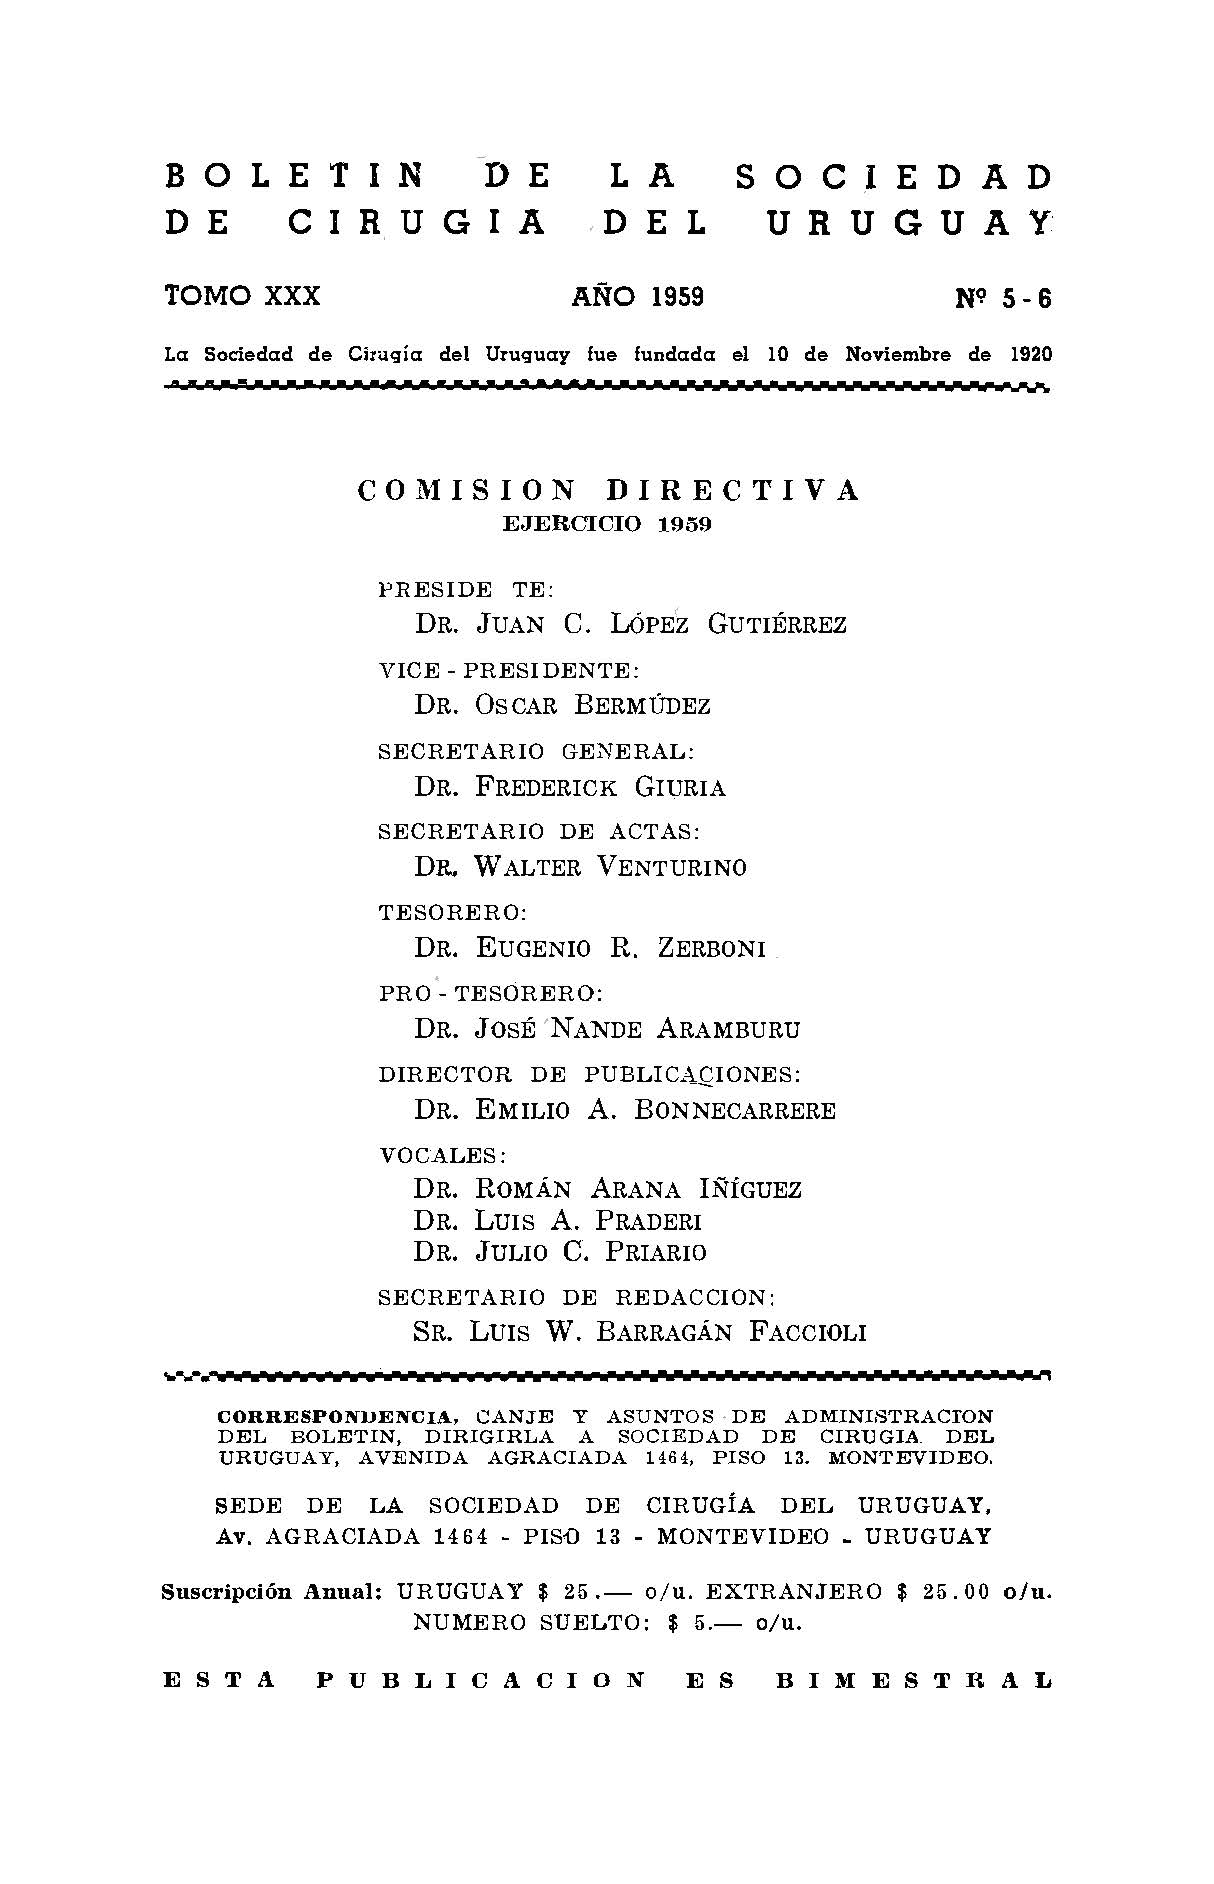 					Ver Vol. 30 Núm. 5-6 (1959): Boletín de la Sociedad de Cirugía del Uruguay
				